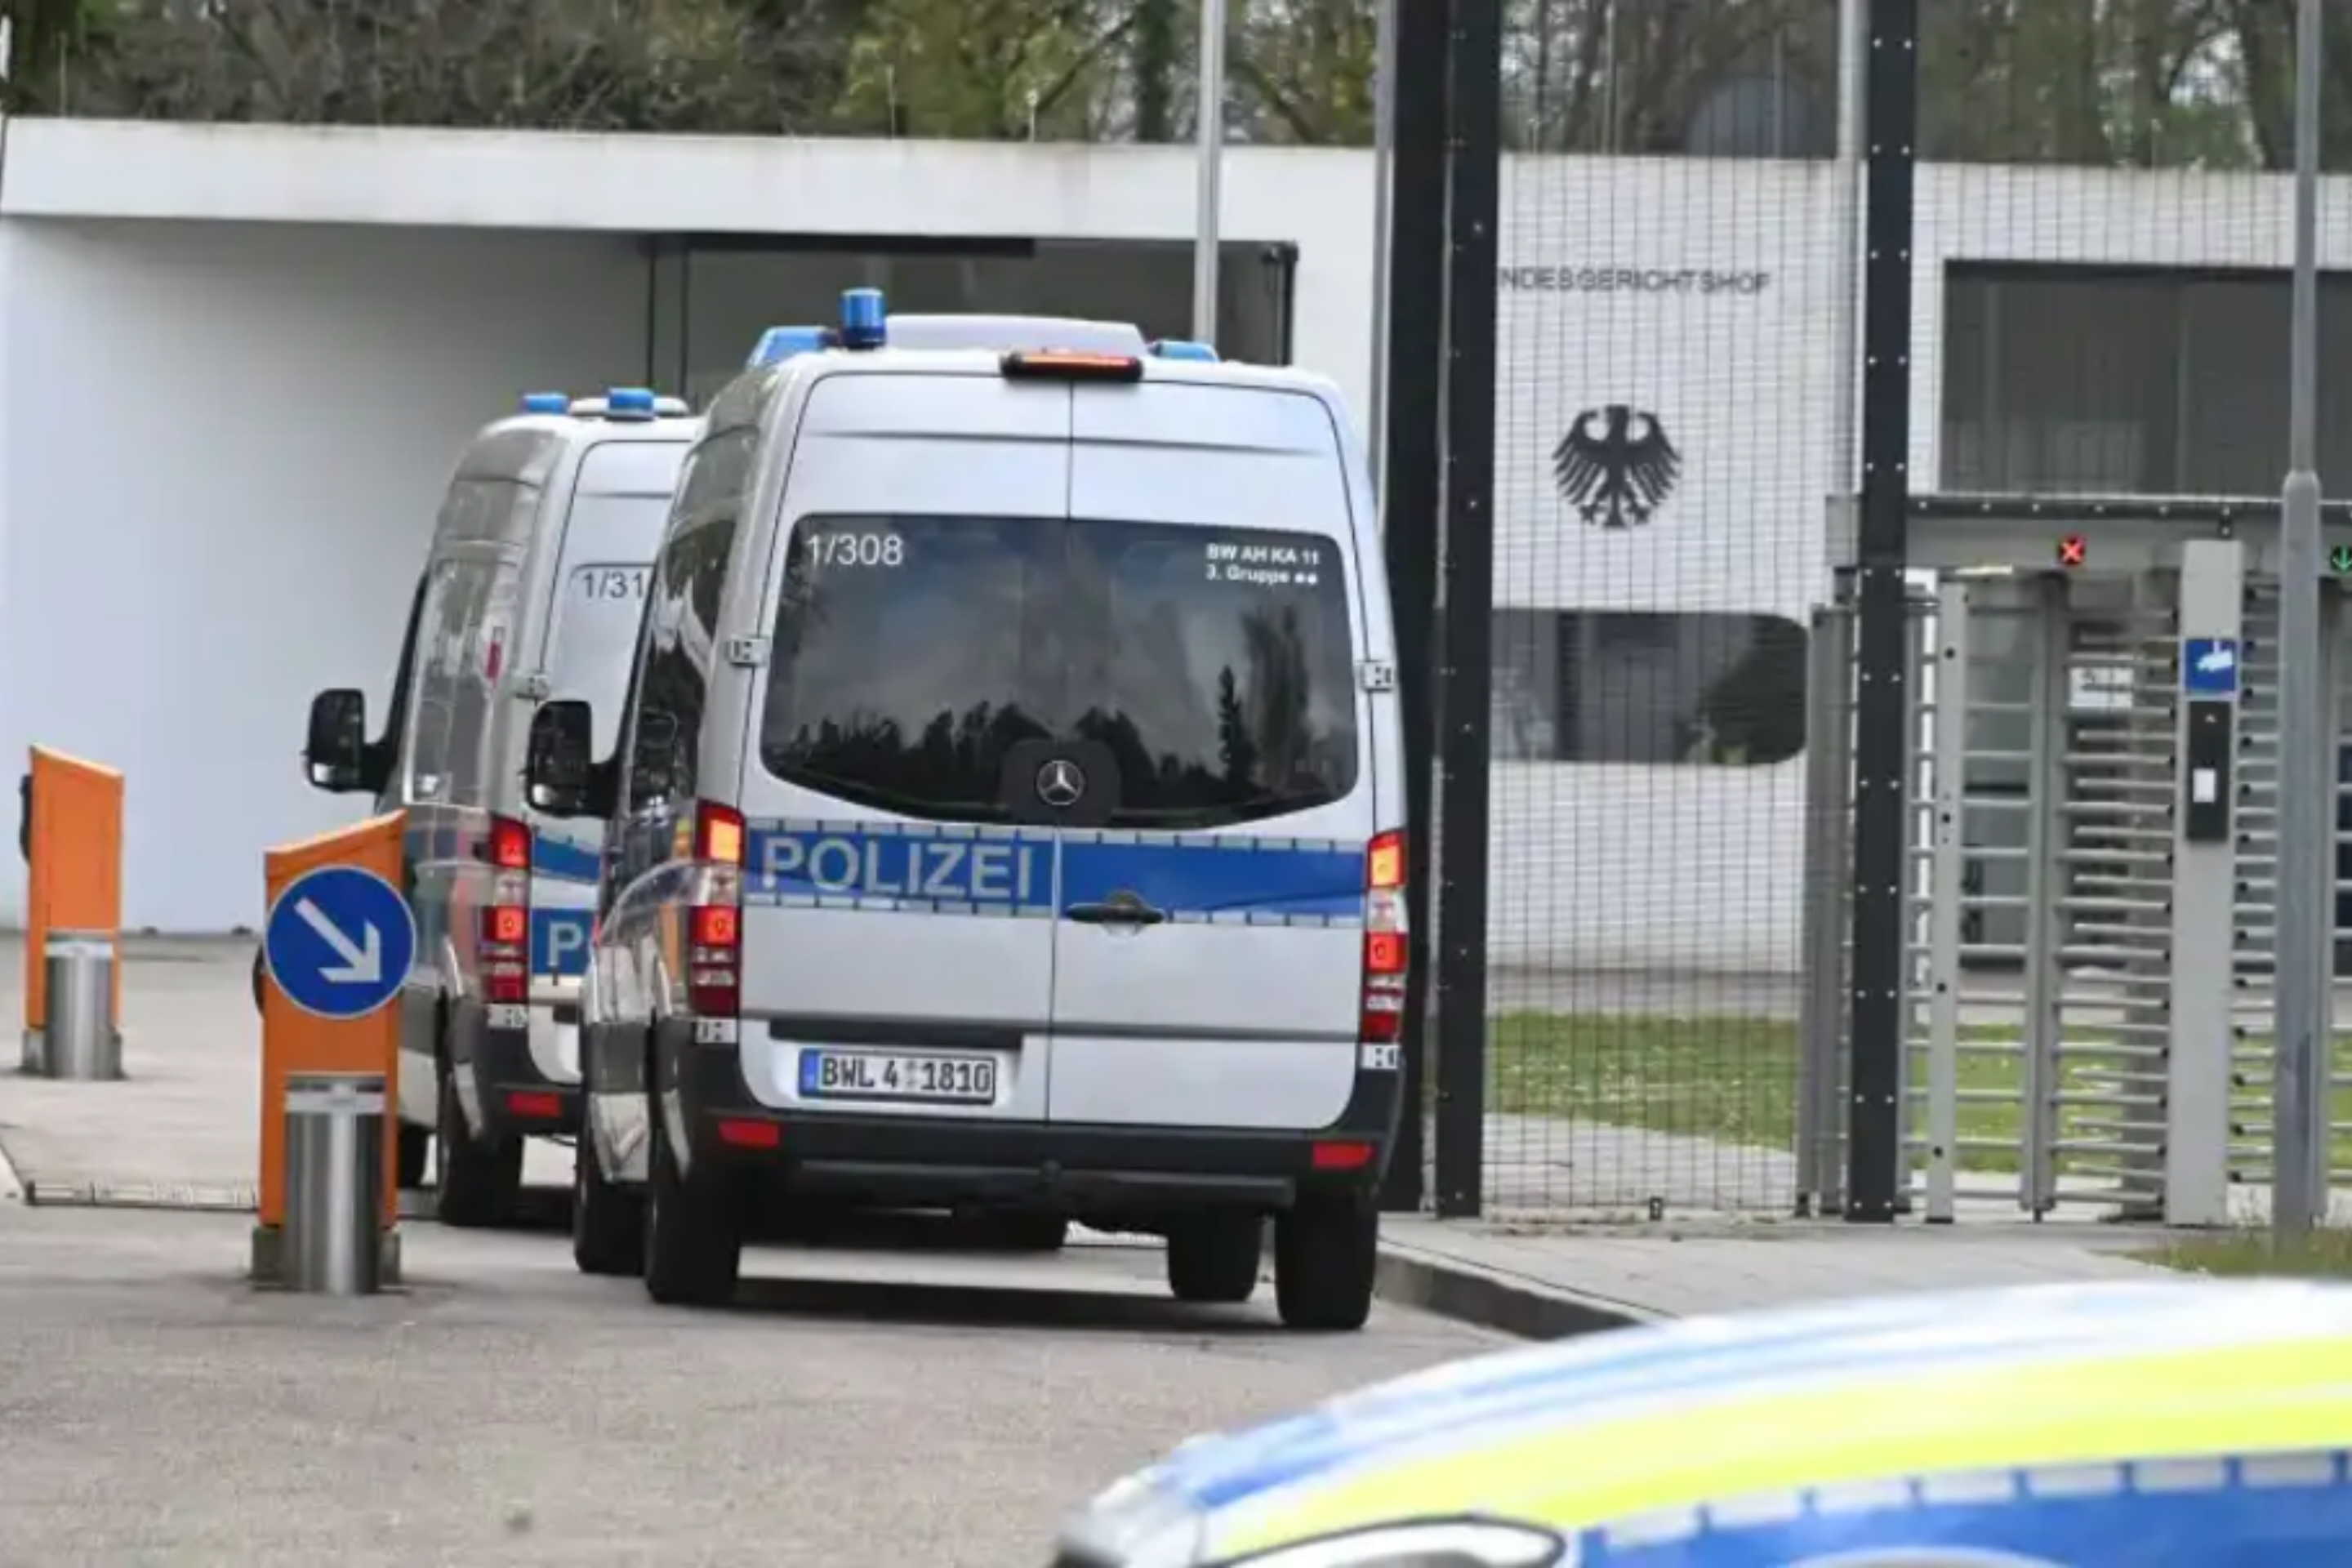 Dyshohet se planifikoi sulm në Gjermani, arrestohet kosovari